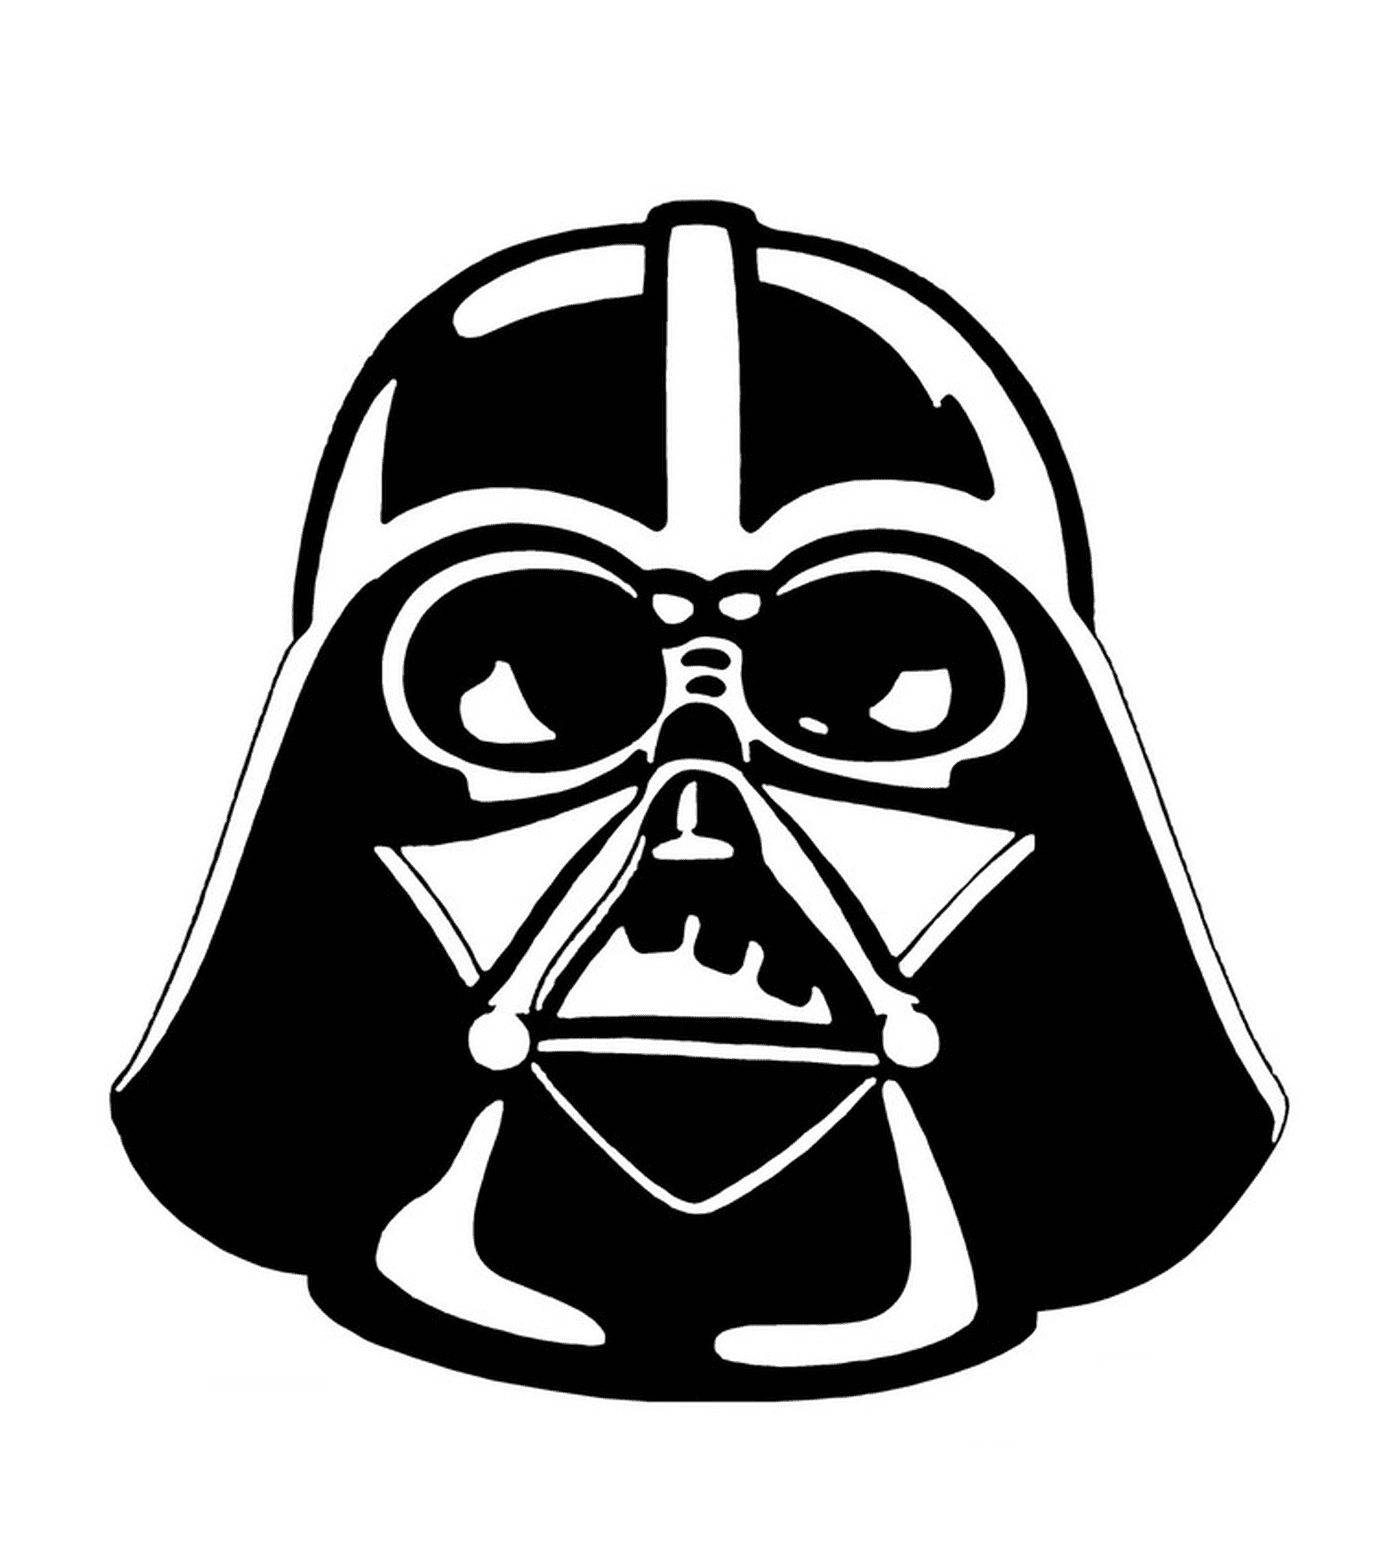  Ritratto di Dark Vader di Star Wars 